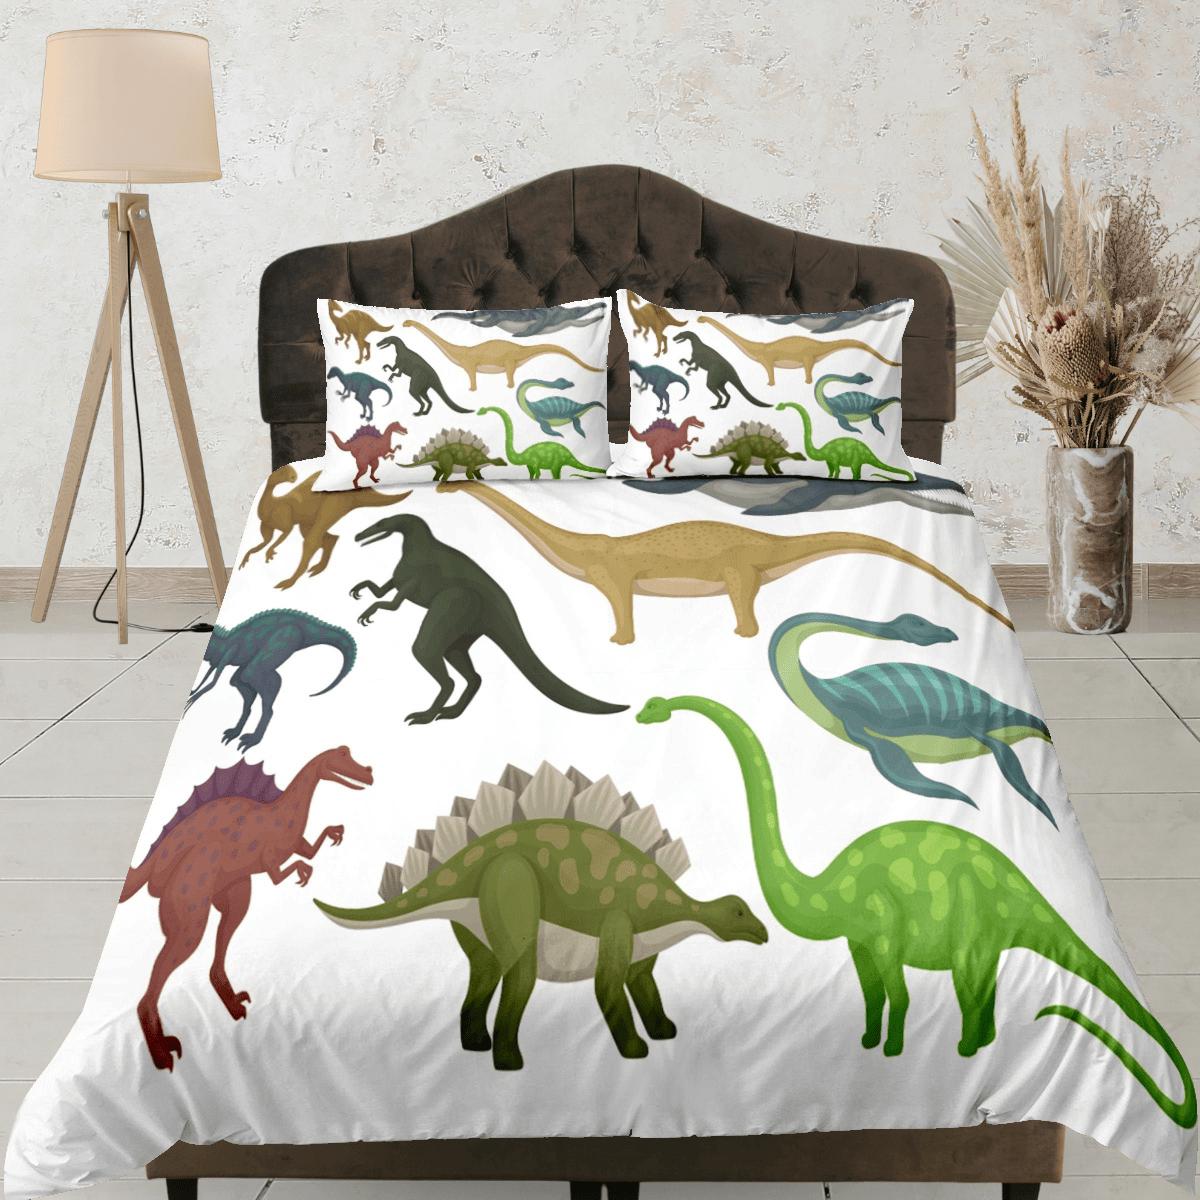 daintyduvet Random dinosaur bedding, kids bedding full, crib duvet cover, dinosaur nursery bed decor, colorful bedding, baby dinosaur, toddler bedding